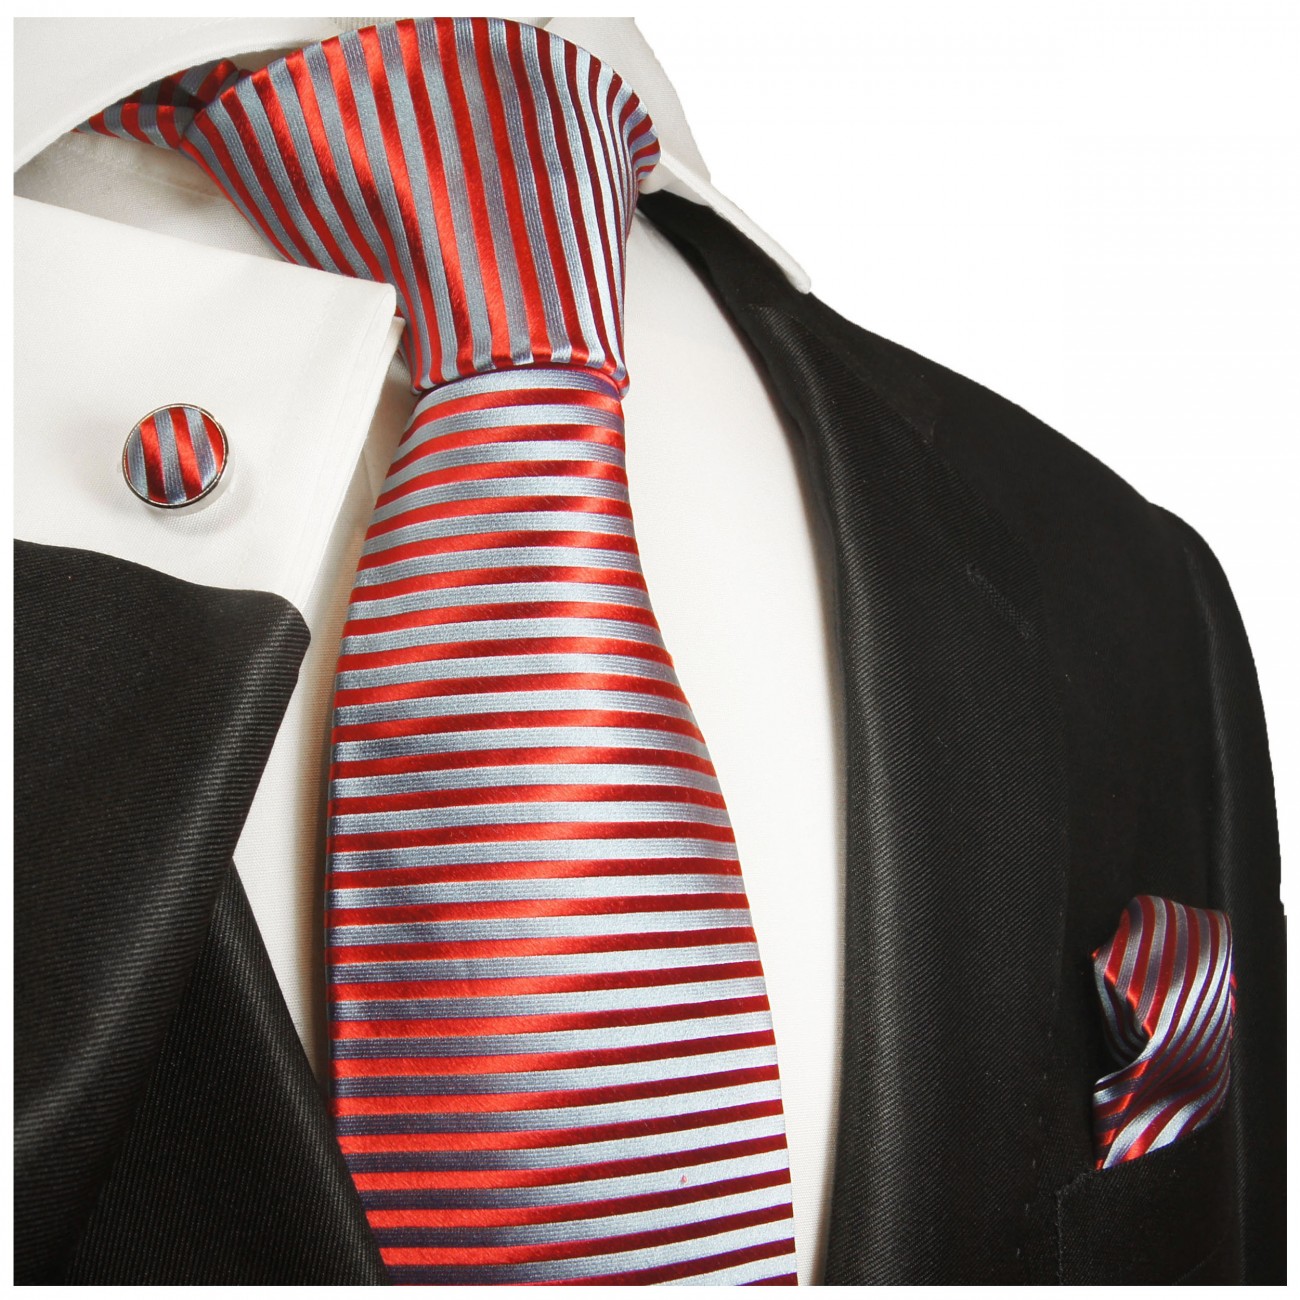 Krawatte rot blau mit Einstecktuch und Manschettenknöpfe fein gestreift 2004